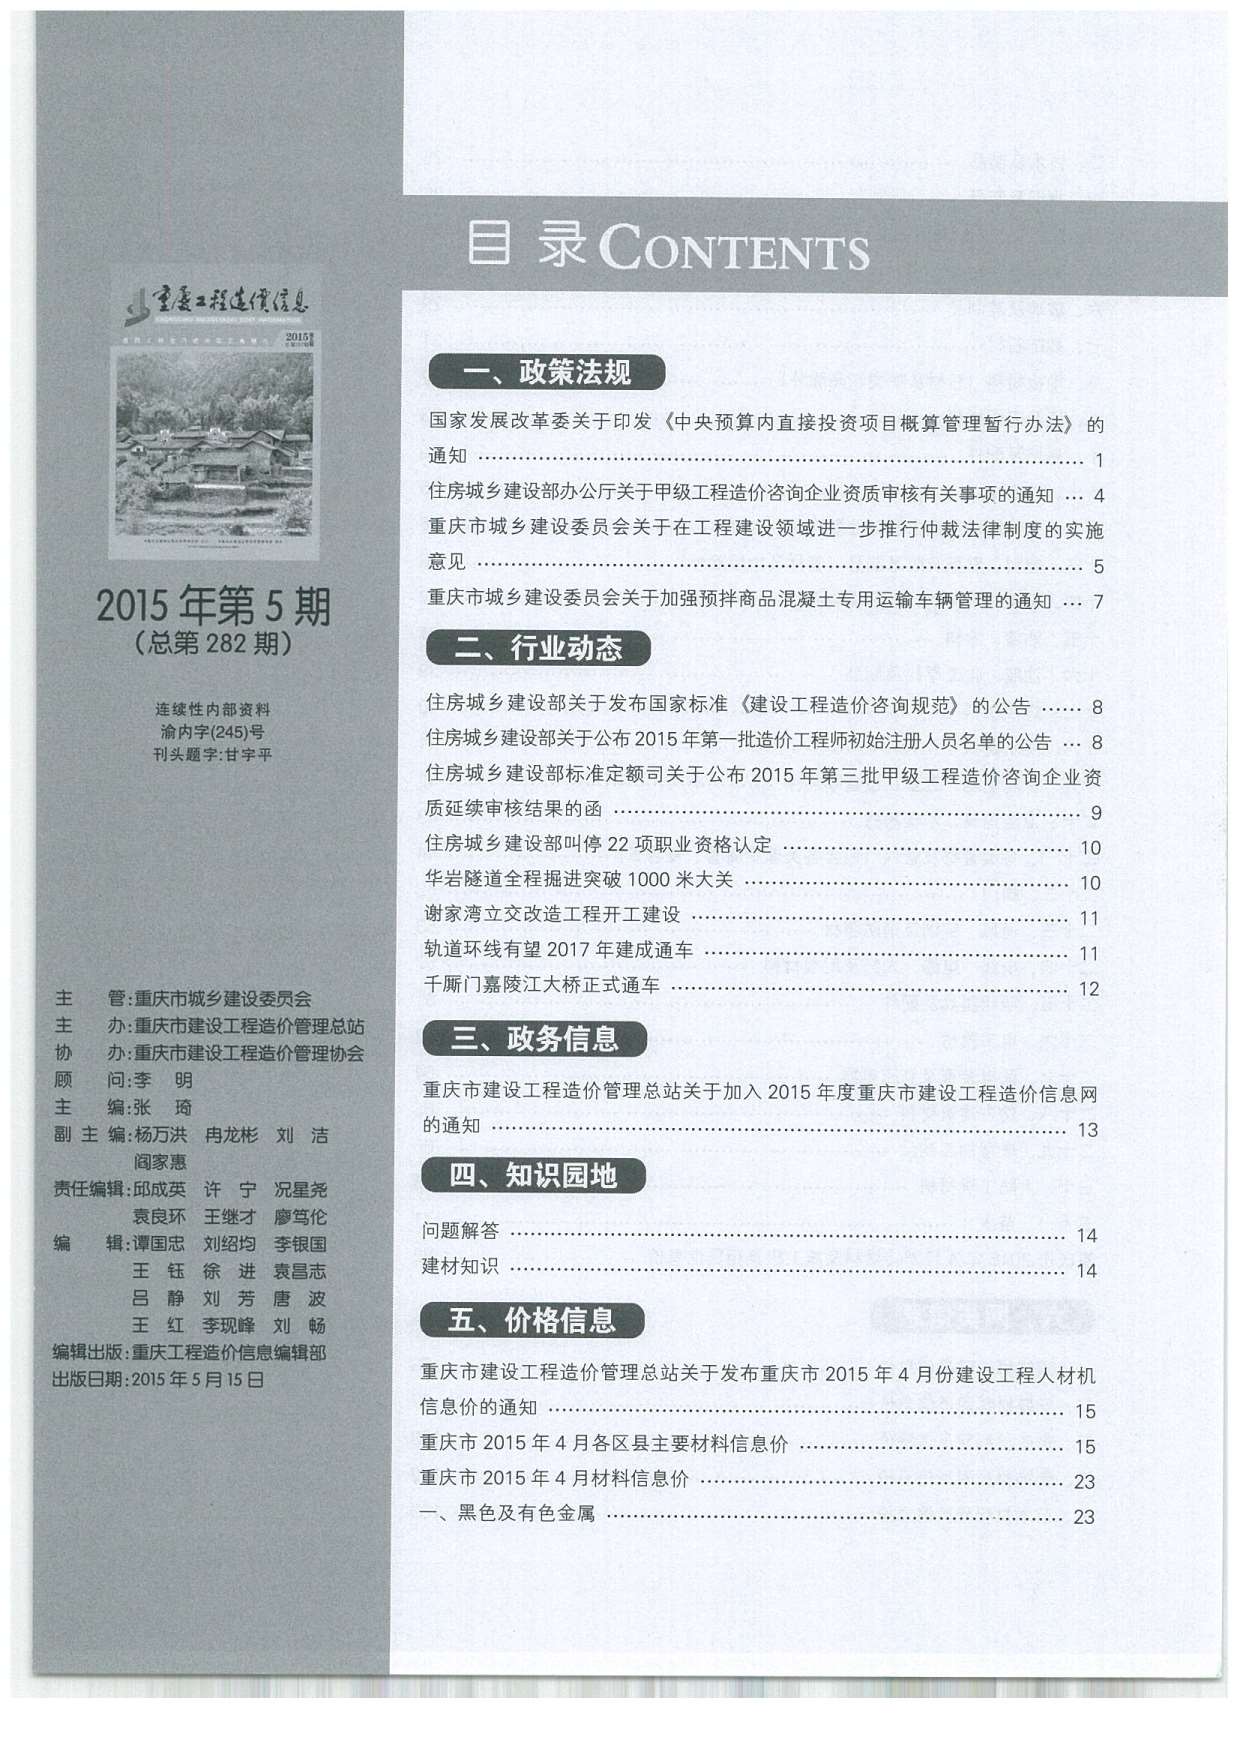 重庆市2015年5月工程造价信息价